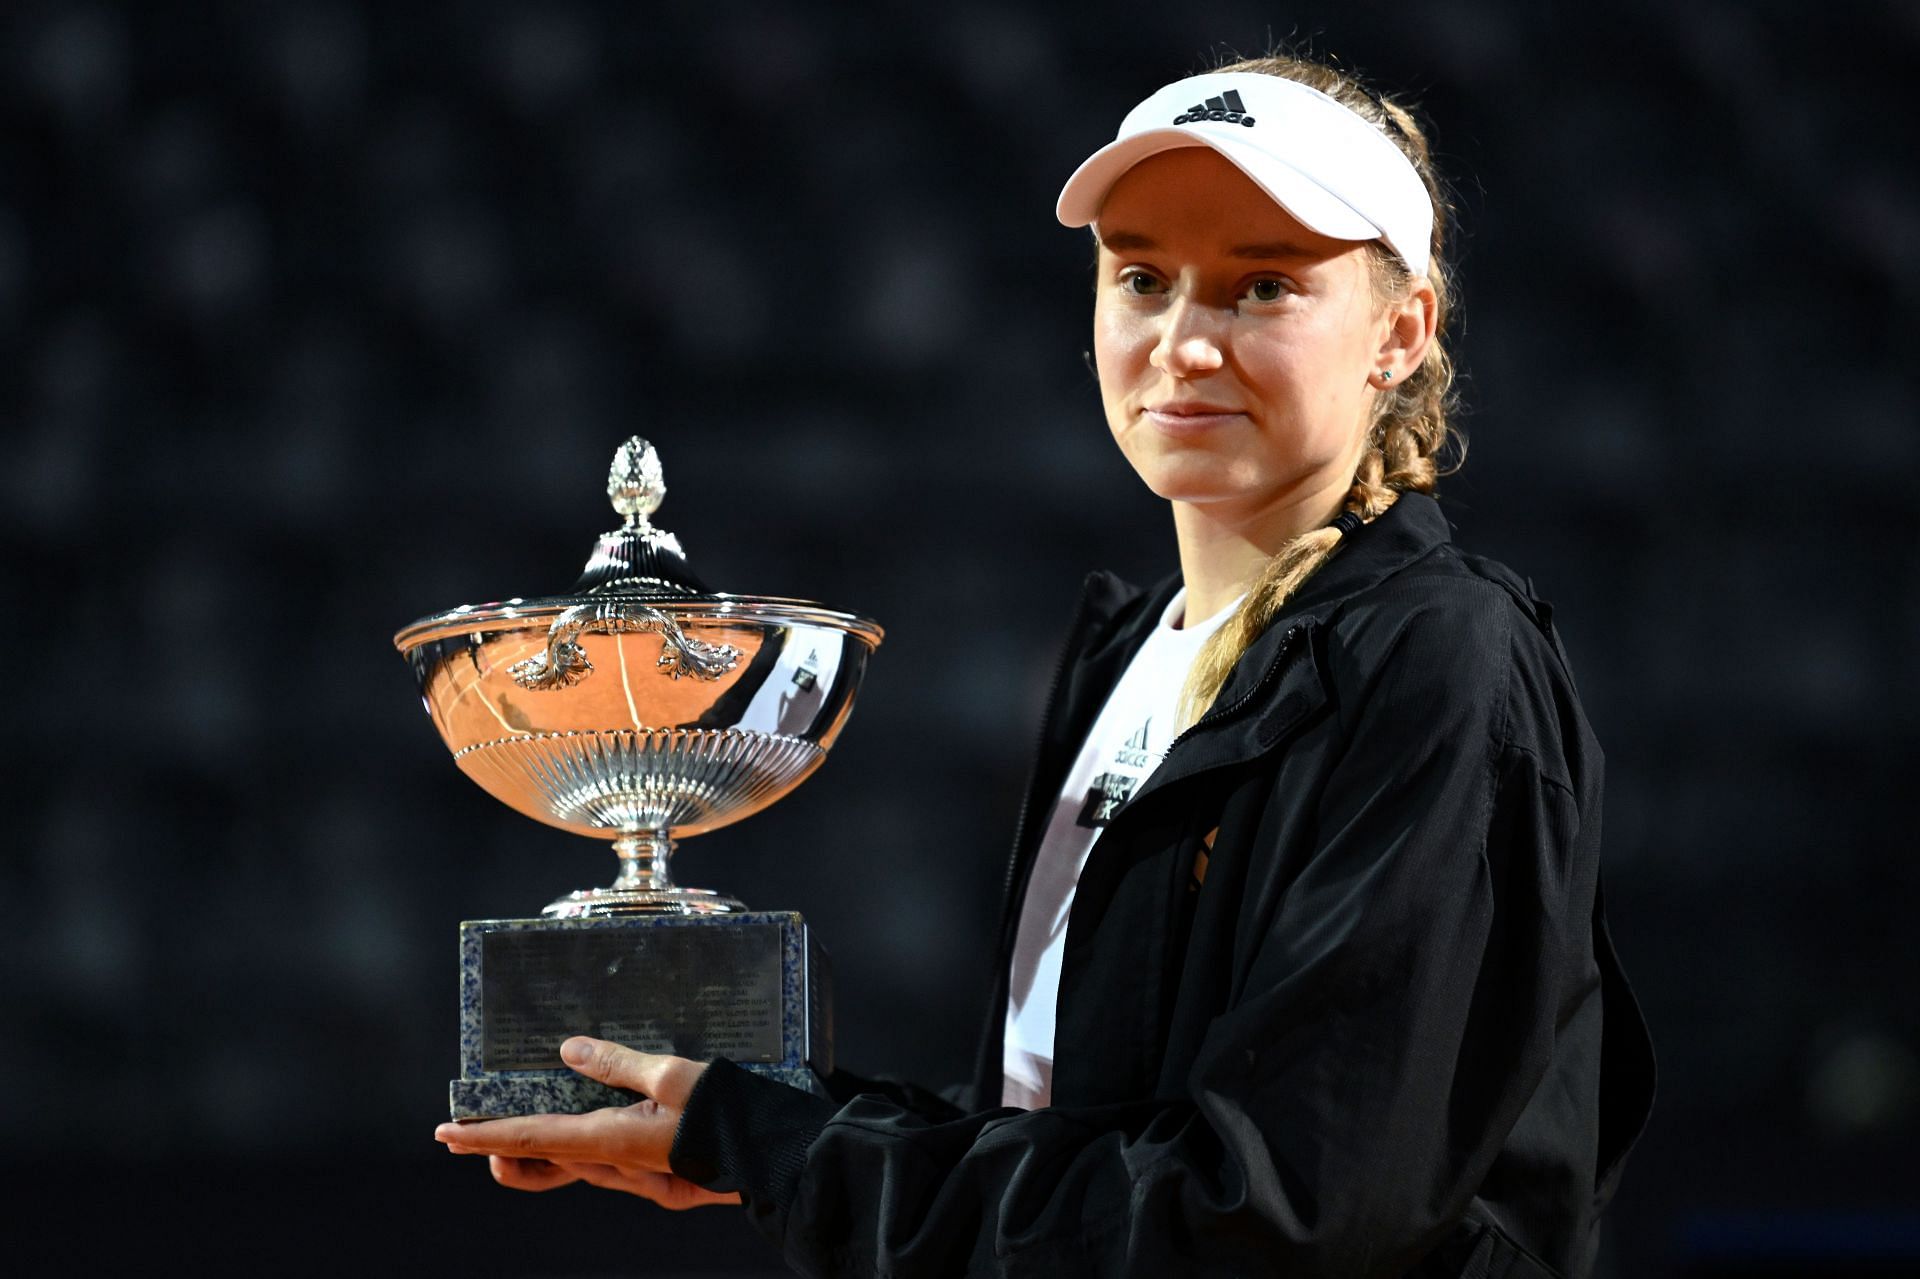 Elena Rybakina wins the Italian Open title